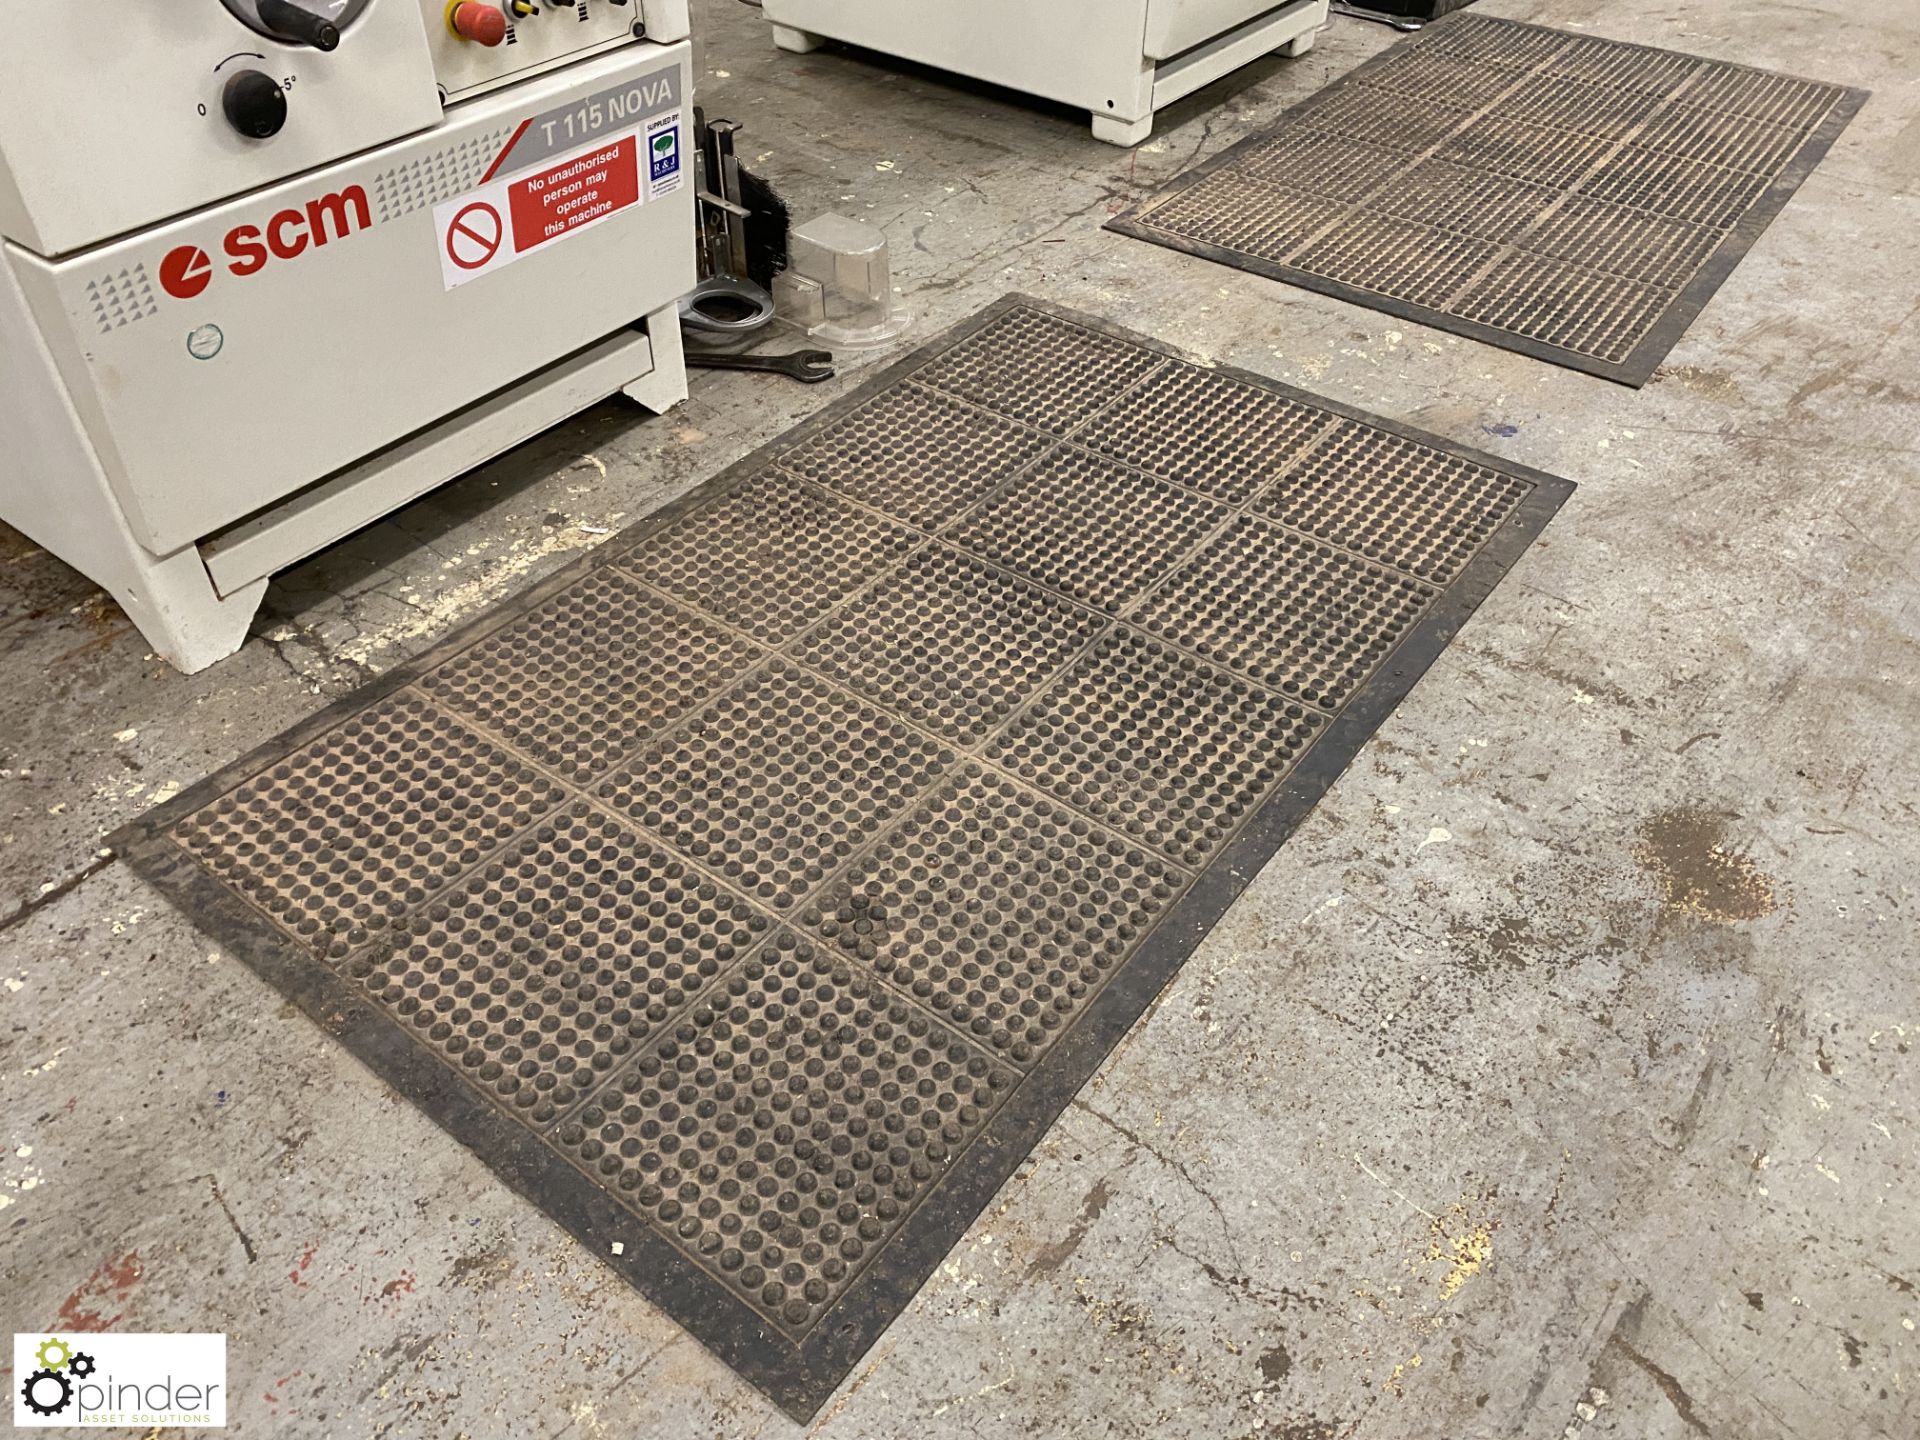 2 Anti-slip machine operator mats